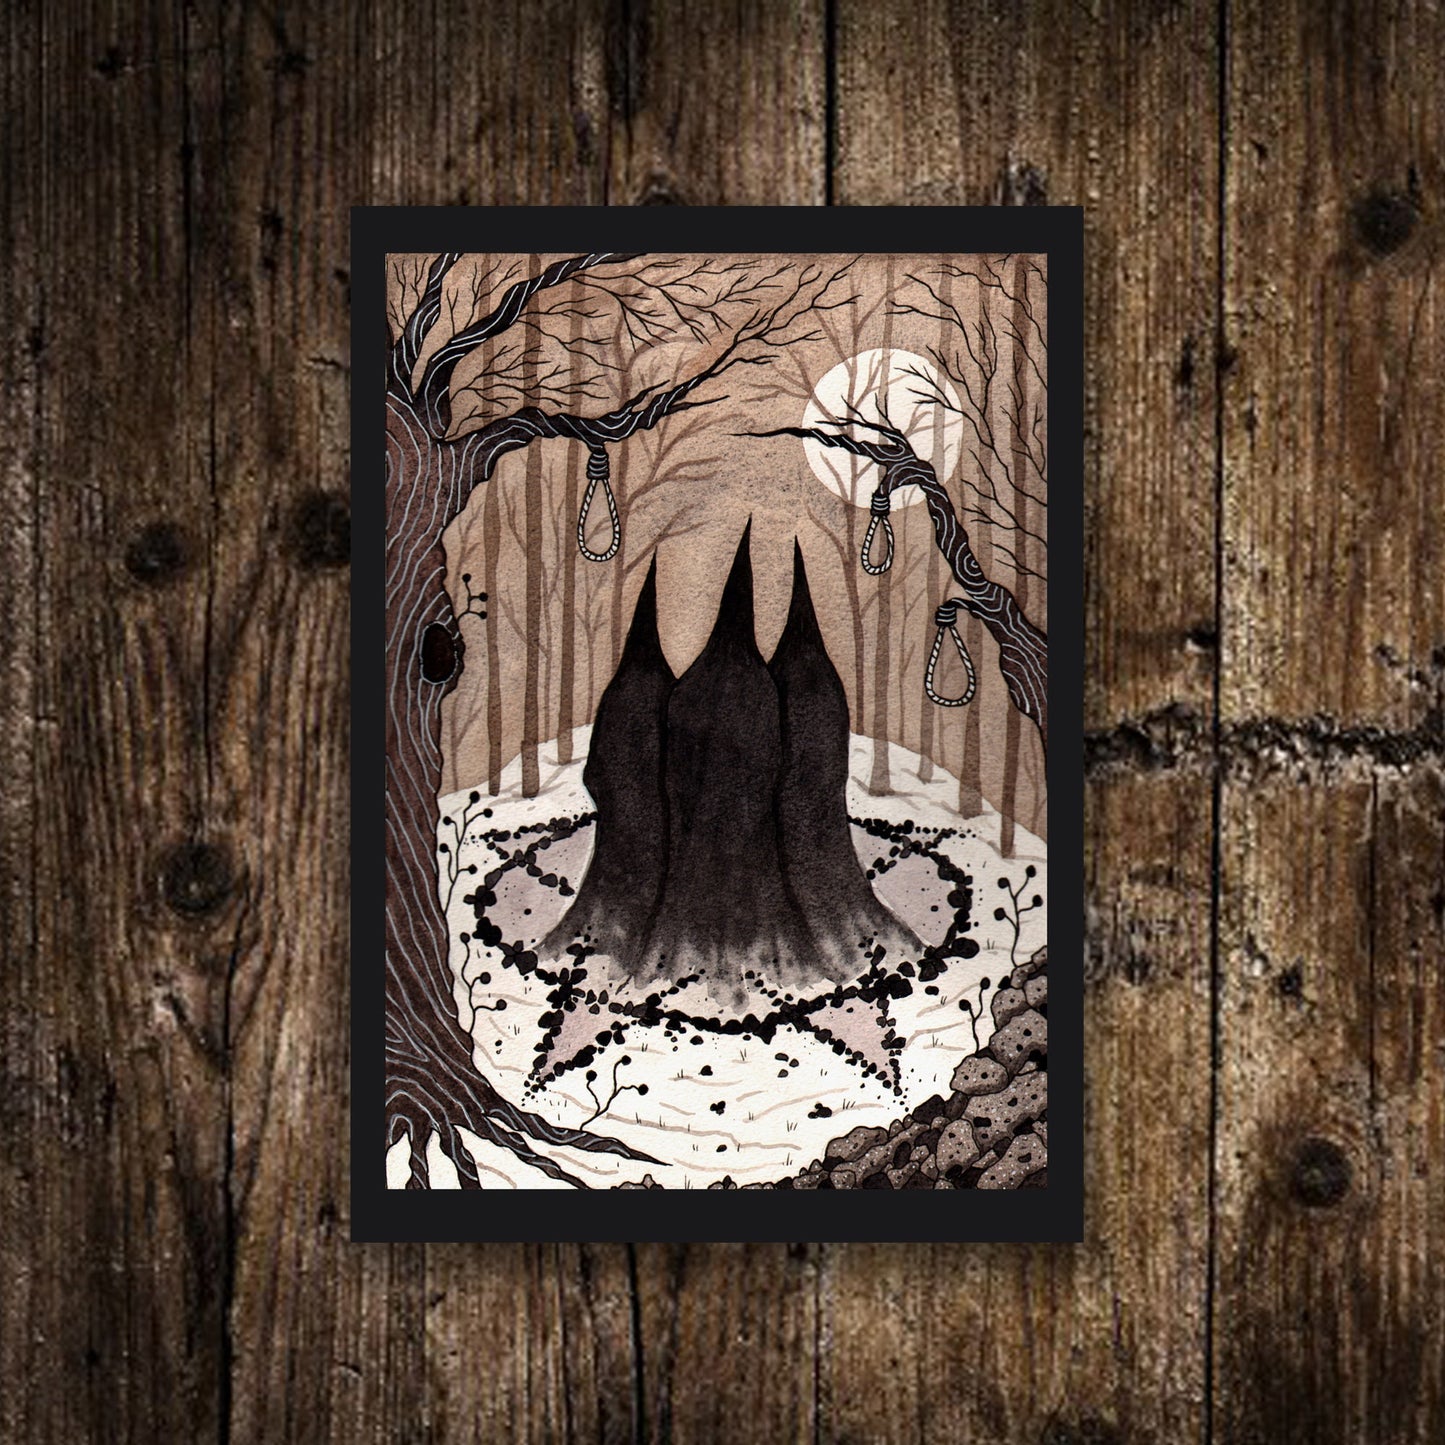 Set Of 6 Mini Spooky Prints - Halloween Witchy Skeleton Coffin Illustration Decor - Mini Gothic Prints - Zombie Plague Black Goat Art Set